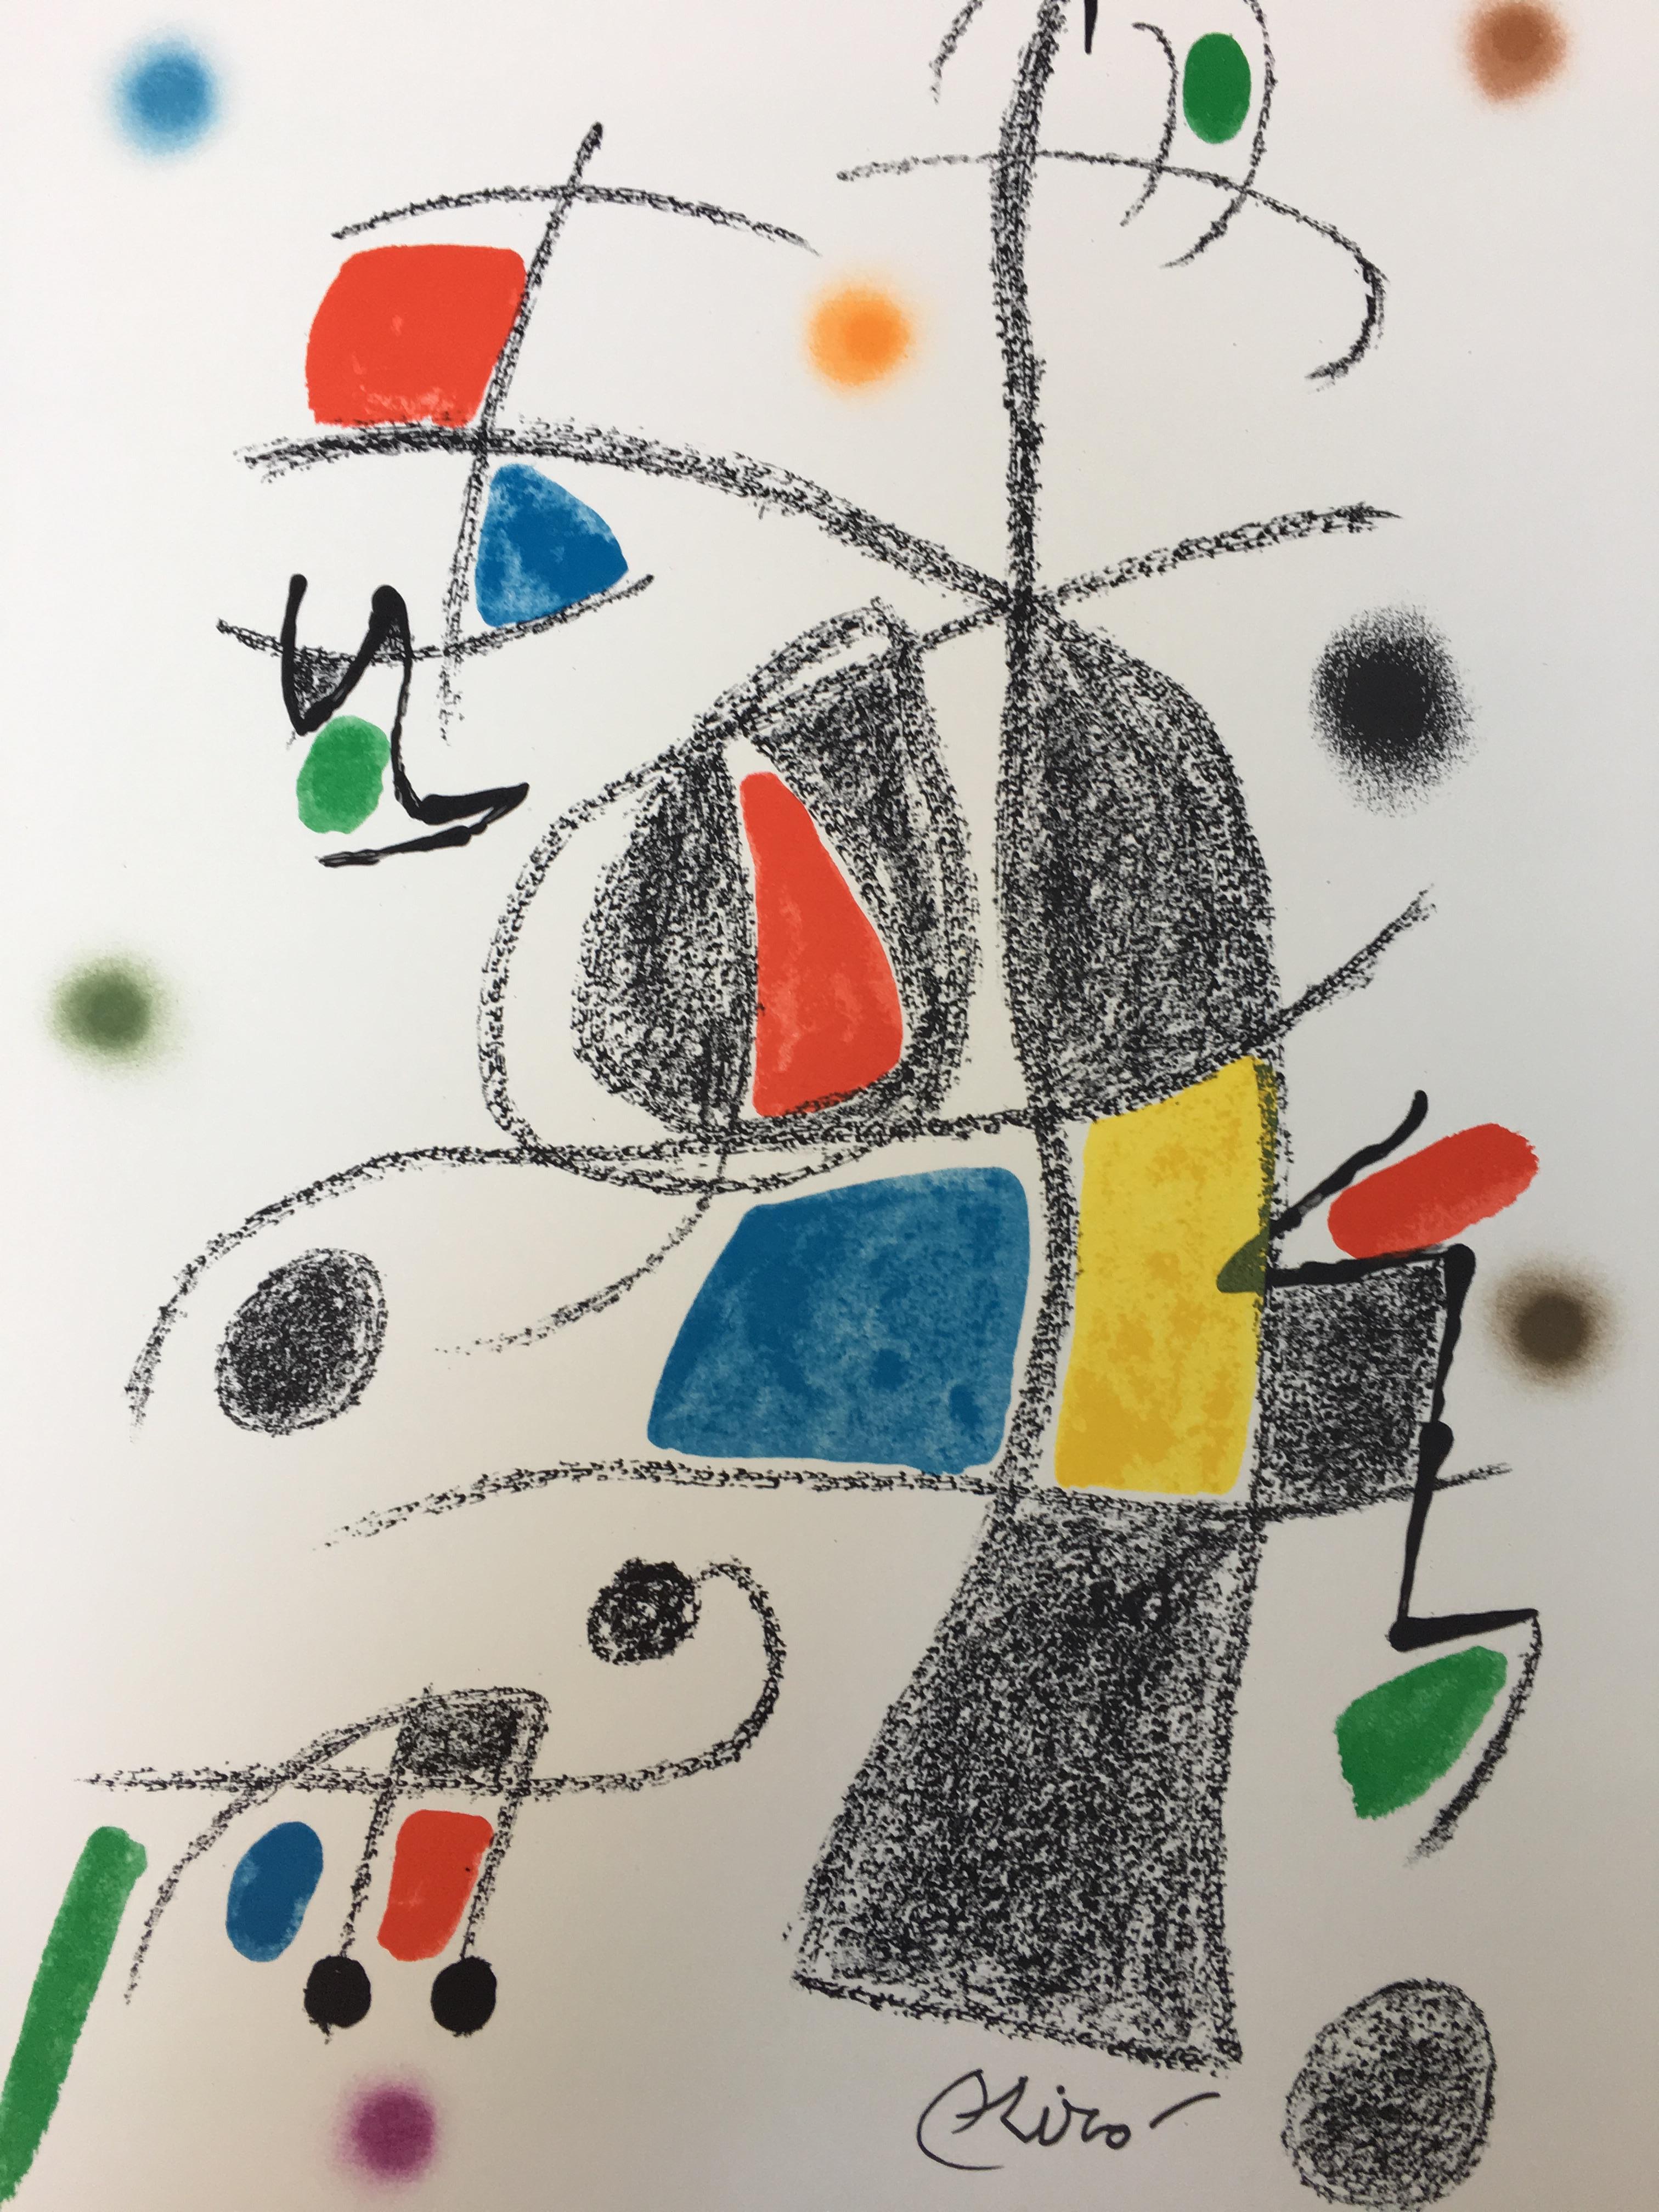 Joan Miró Abstract Print - Maravillas con Variaciones Acrosticas 2